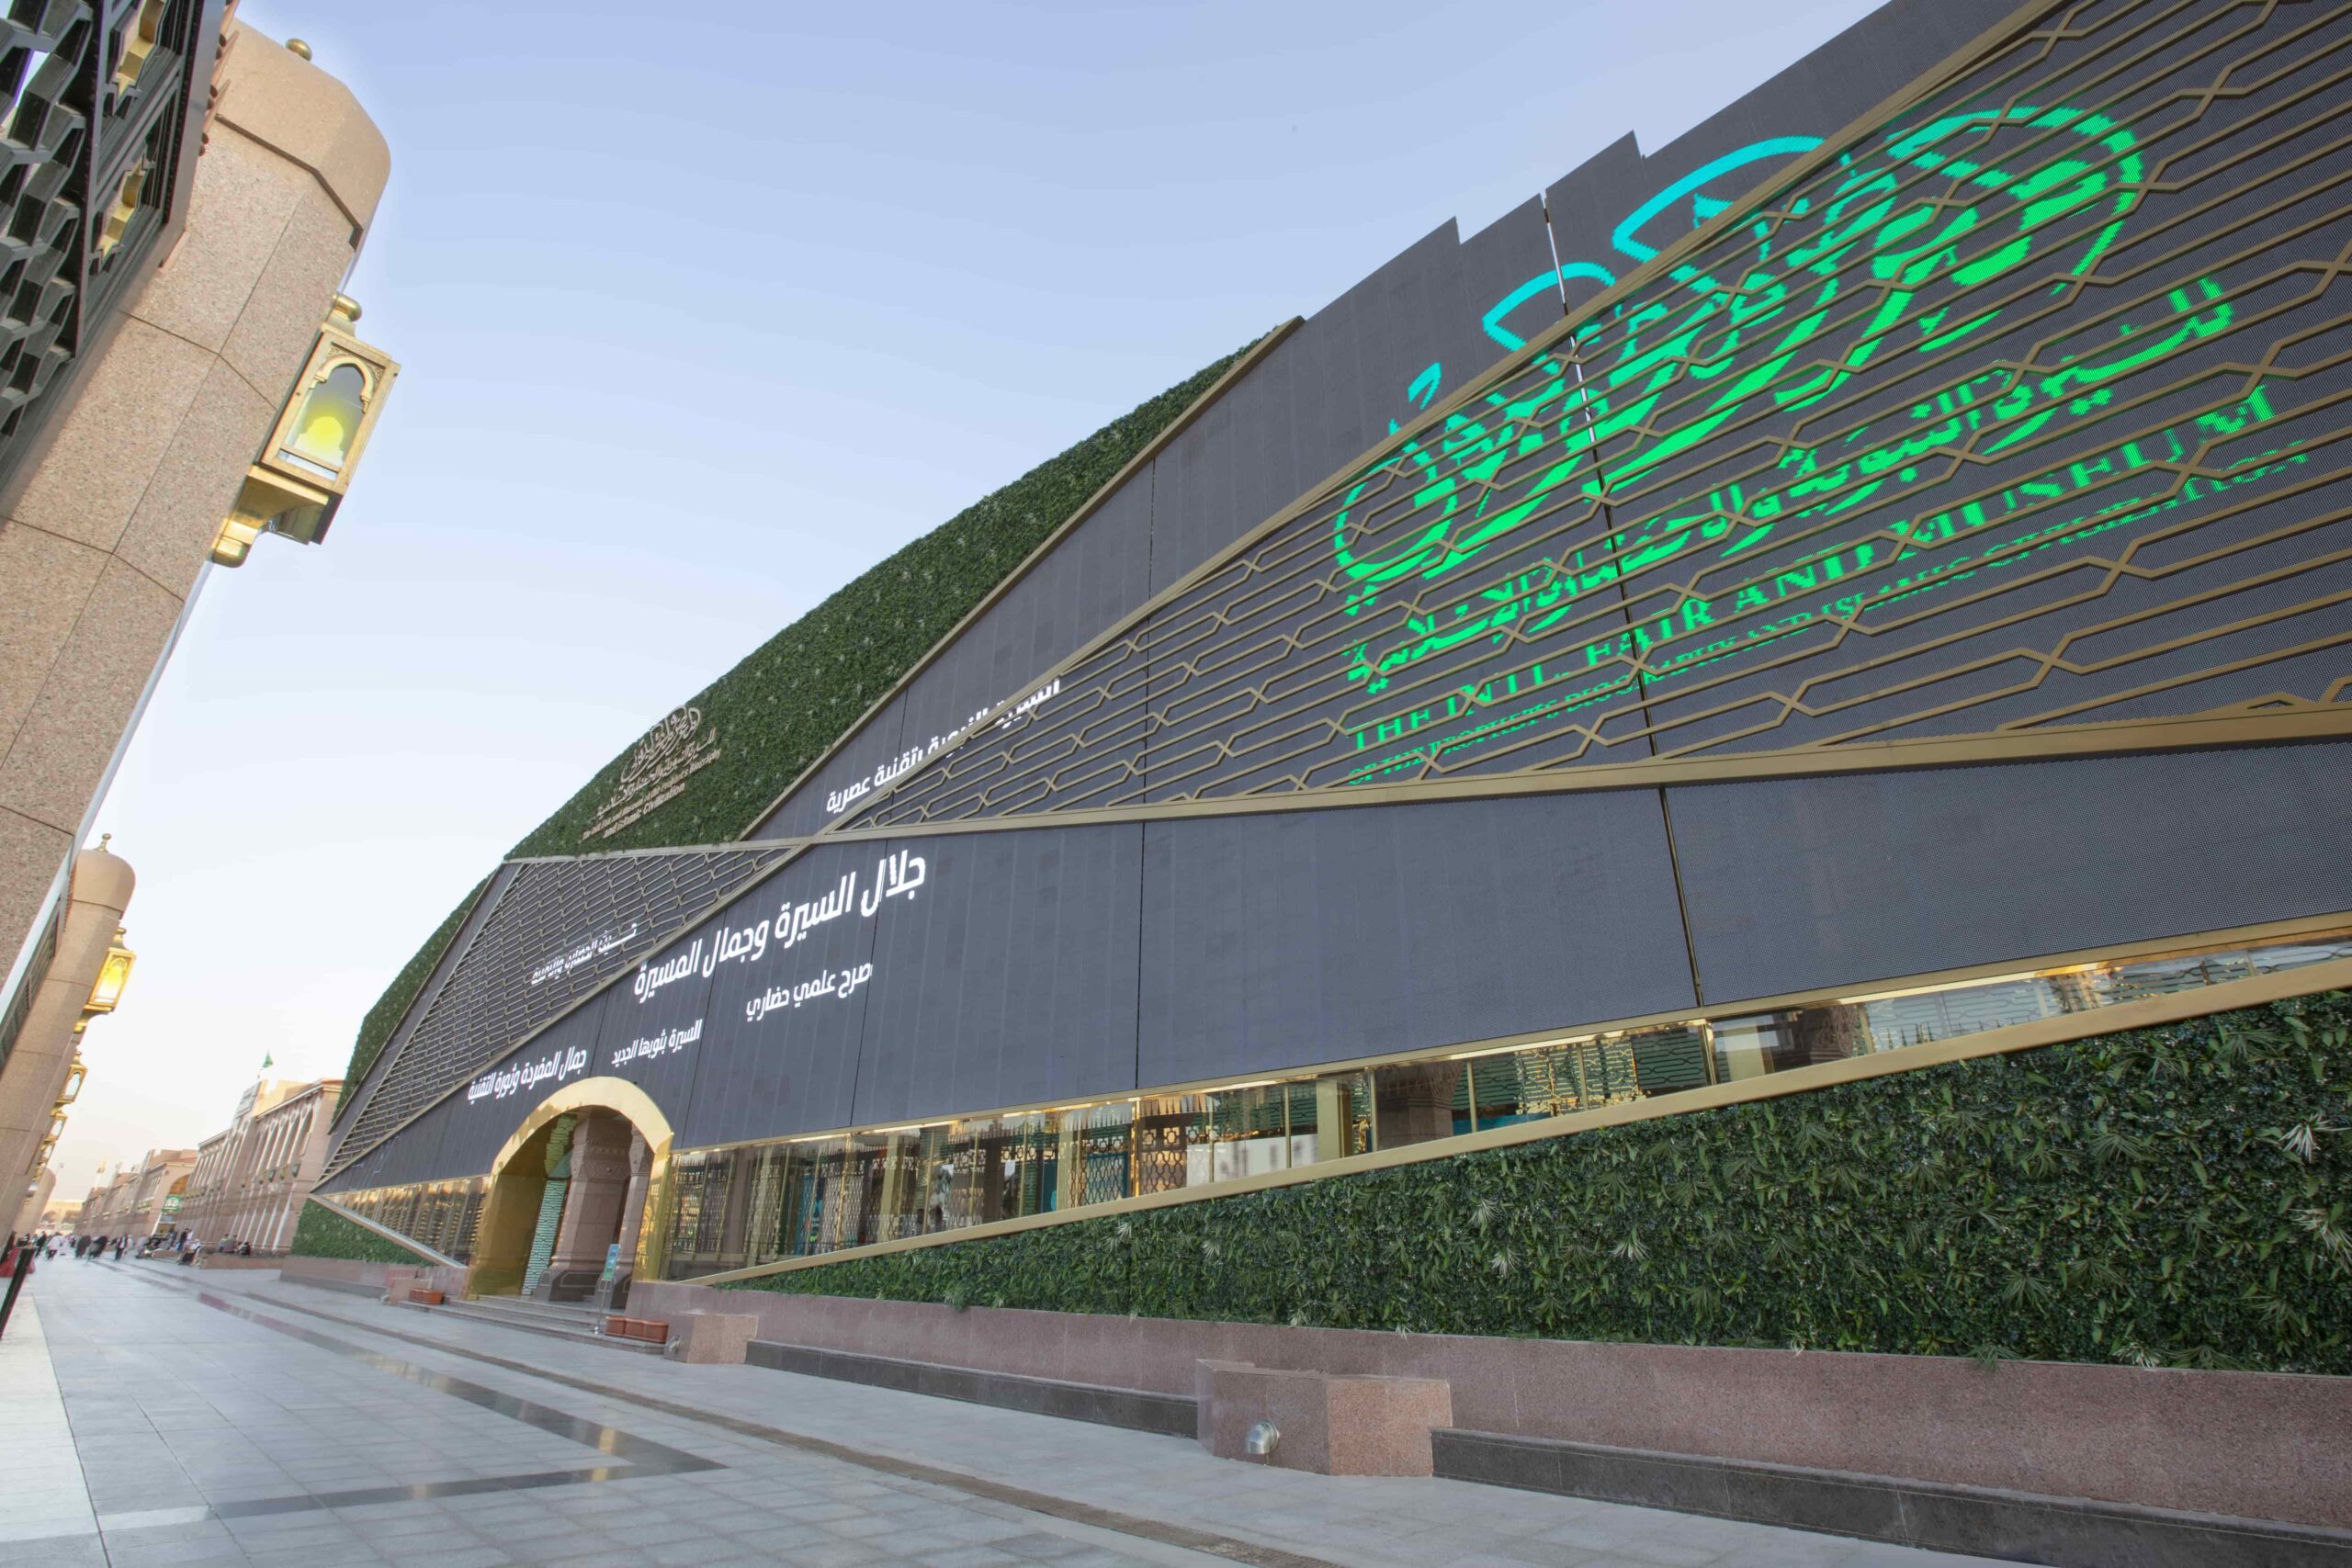 واجهة المعرض والمتحف الدولي للسيرة النبوي والحضارة الإسلامية بجوار الحرم النبوي2